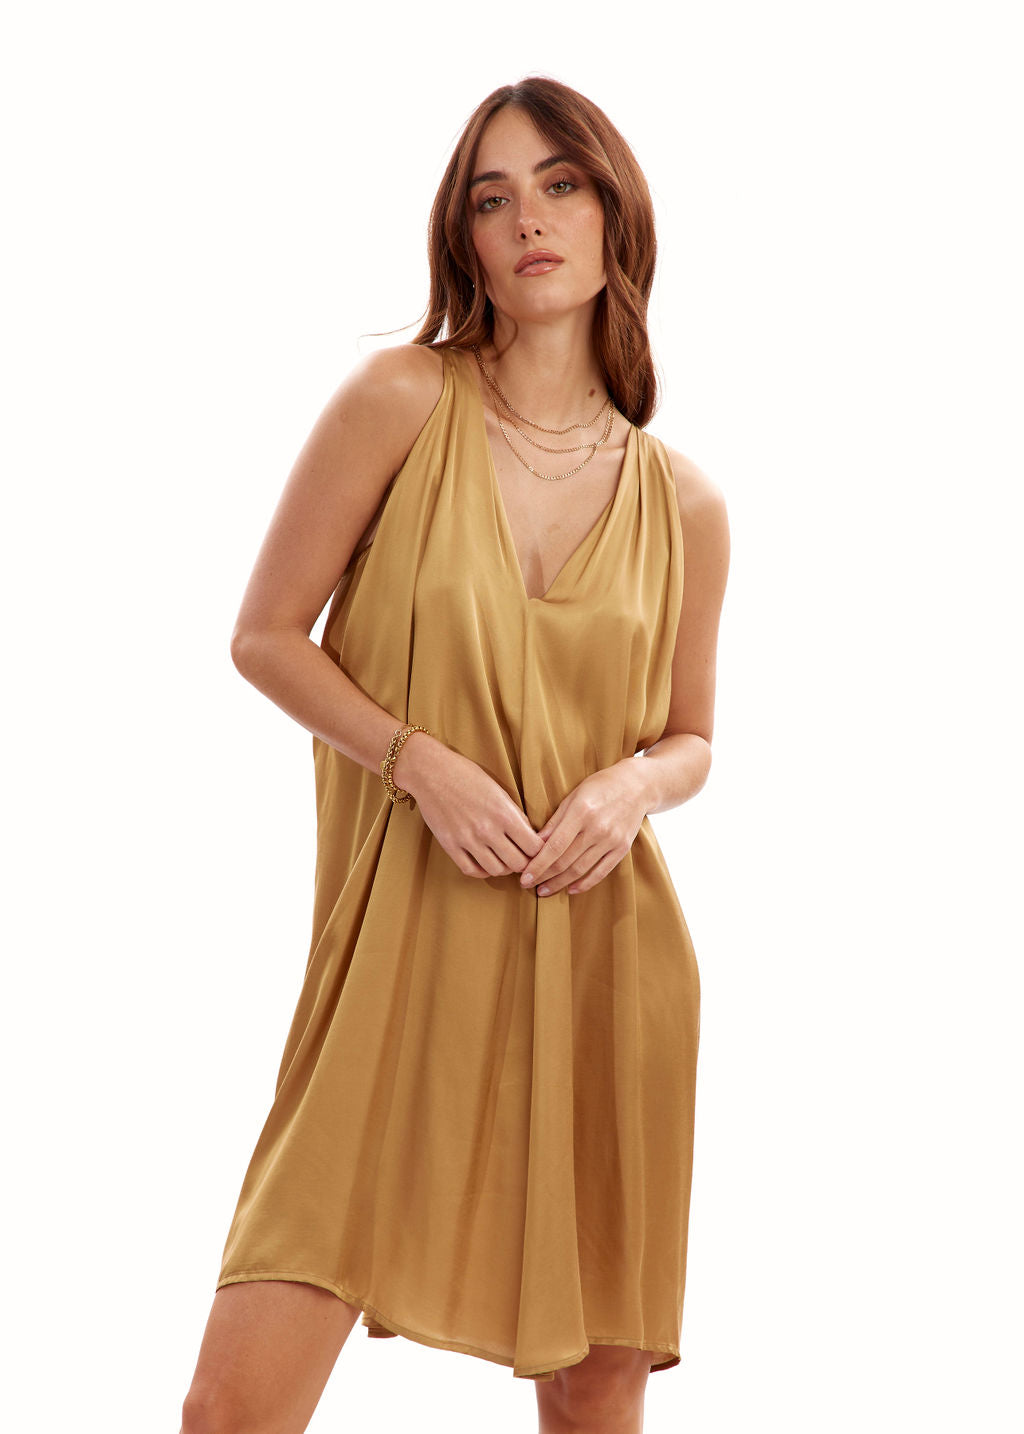 Robe courte fluide beige | Vêtements Femme Lauren Vidal 5